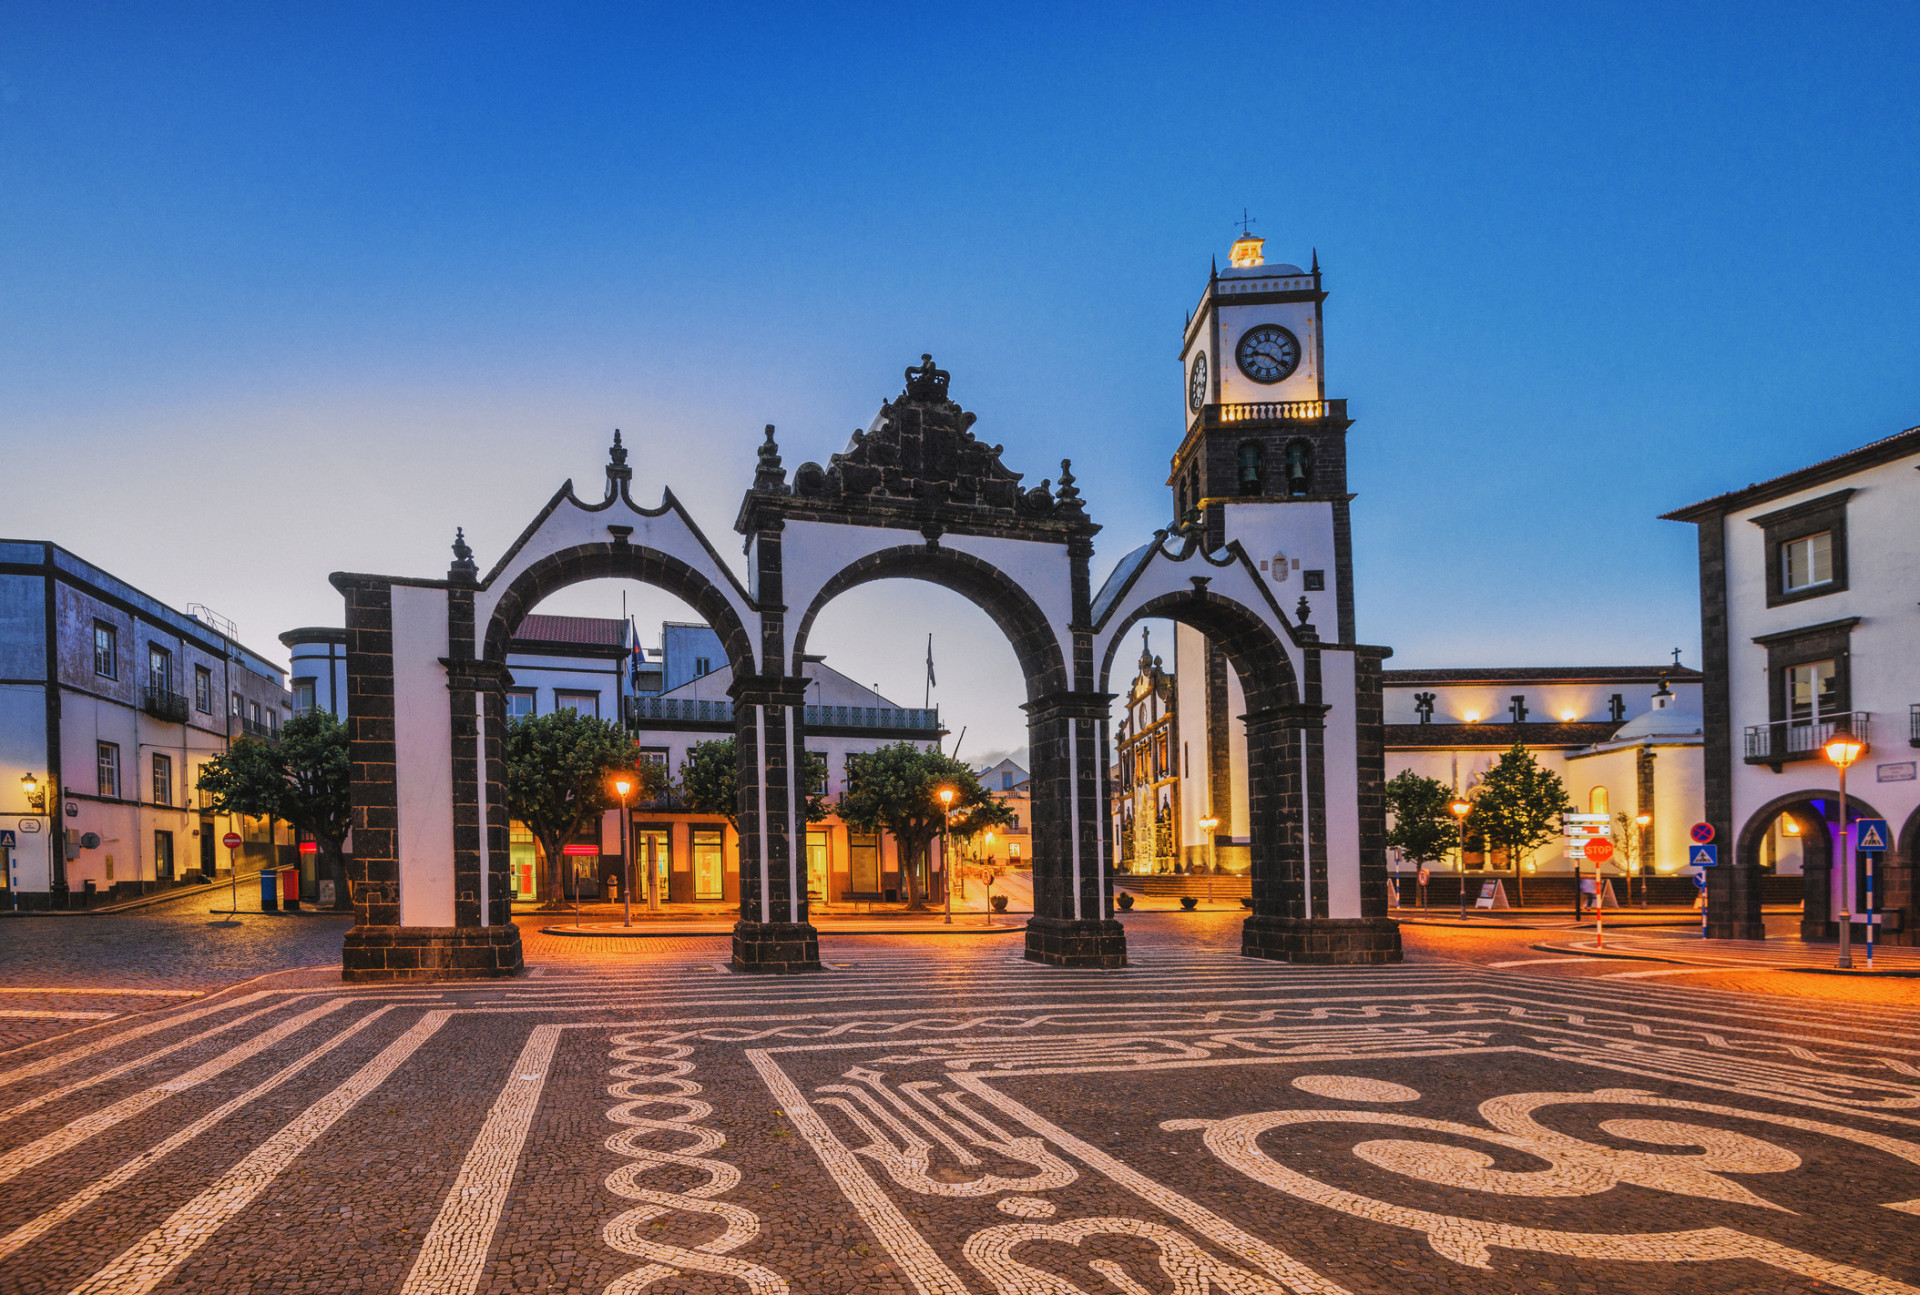 La plus grande <a href="https://www.starsinsider.com/fr/lifestyle/631193/ces-villes-sont-les-plus-dangereuses-du-monde" rel="noopener">ville</a> des Açores, Ponta Delgada, se distingue par ses Portas da Cidade (photo). Les portes de la ville ont été construites en 1783.<p><a href="https://www.msn.com/fr-fr/community/channel/vid-7xx8mnucu55yw63we9va2gwr7uihbxwc68fxqp25x6tg4ftibpra?cvid=94631541bc0f4f89bfd59158d696ad7e">Suivez-nous et accédez tous les jours à du contenu exclusif</a></p>